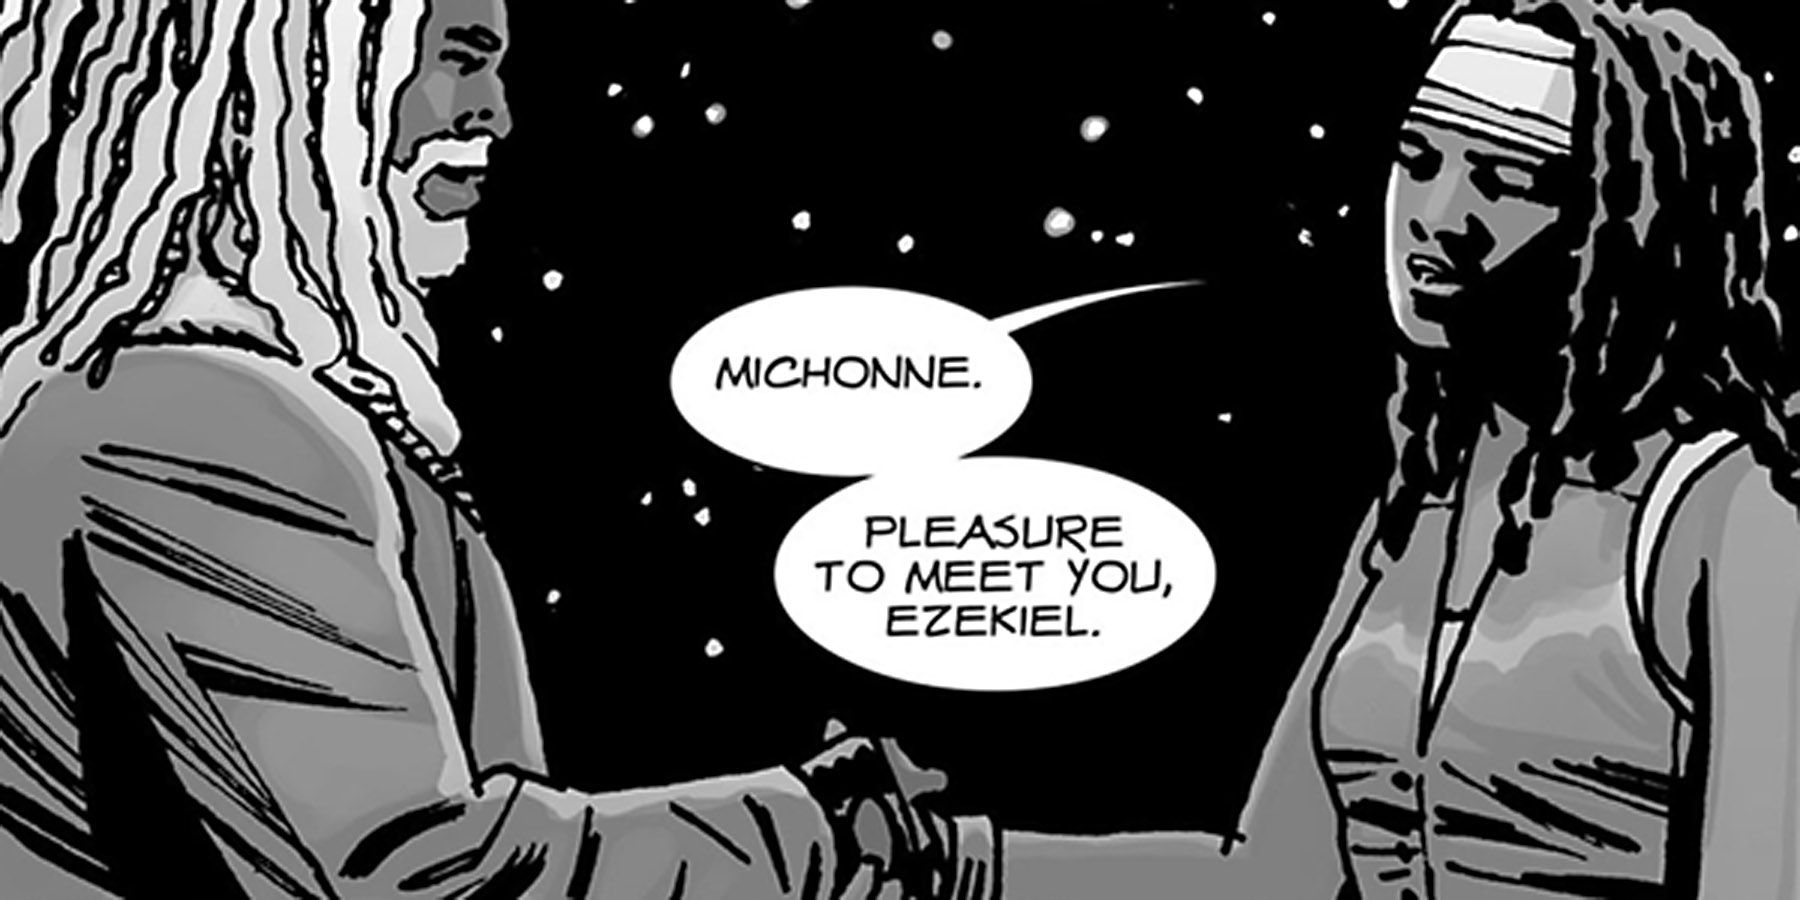 Michonne meets Ezekiel in The Walking Dead comic